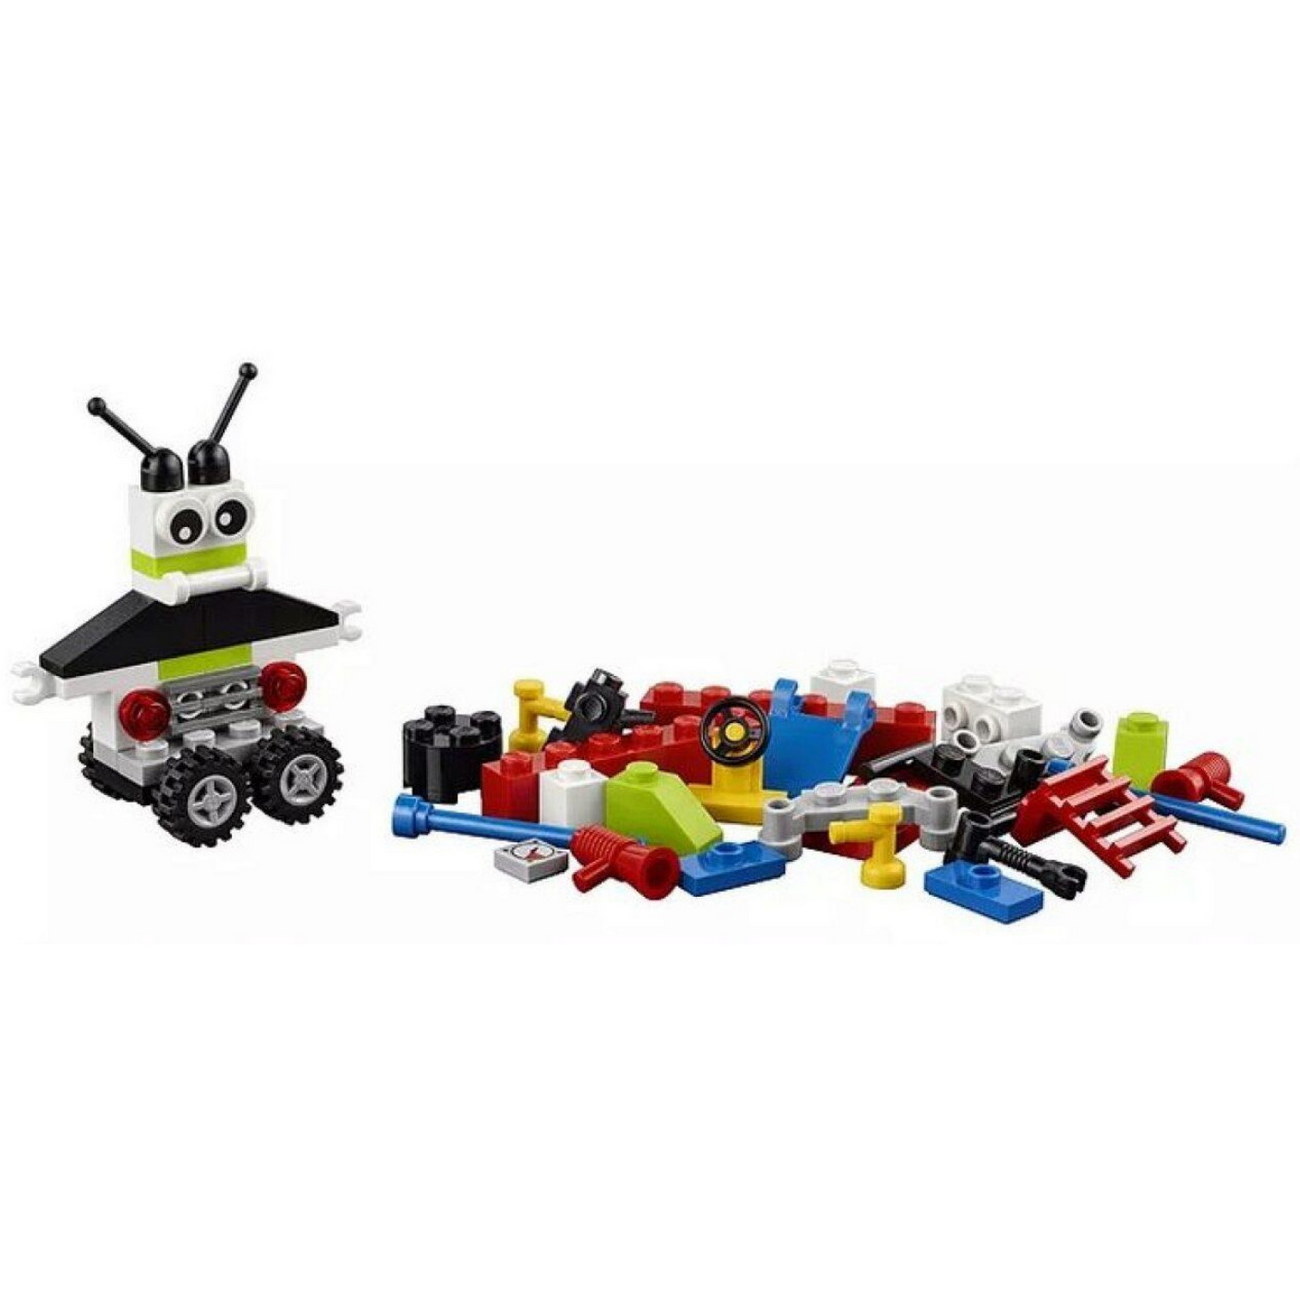 LEGO 30499 Roboter und Fahrzeuge bauen - Polybag